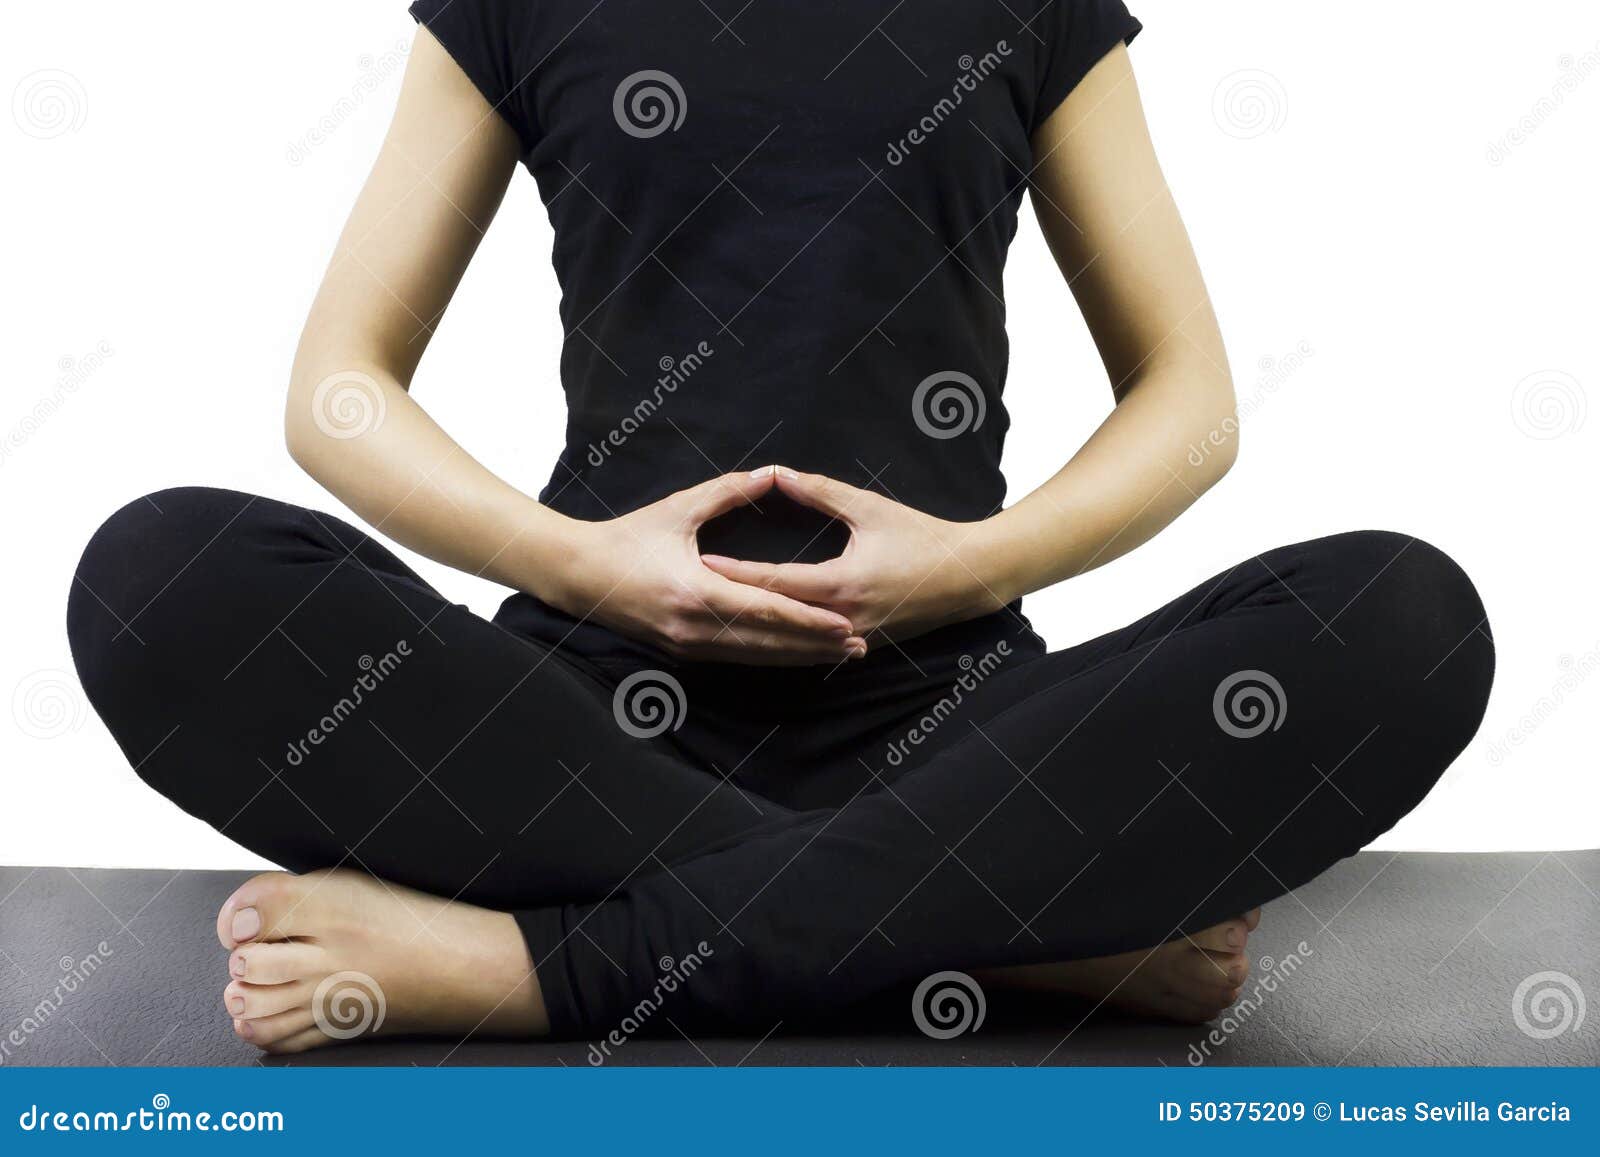 Postura Da Meditação De Pernas Cruzadas Imagem de Stock - Imagem